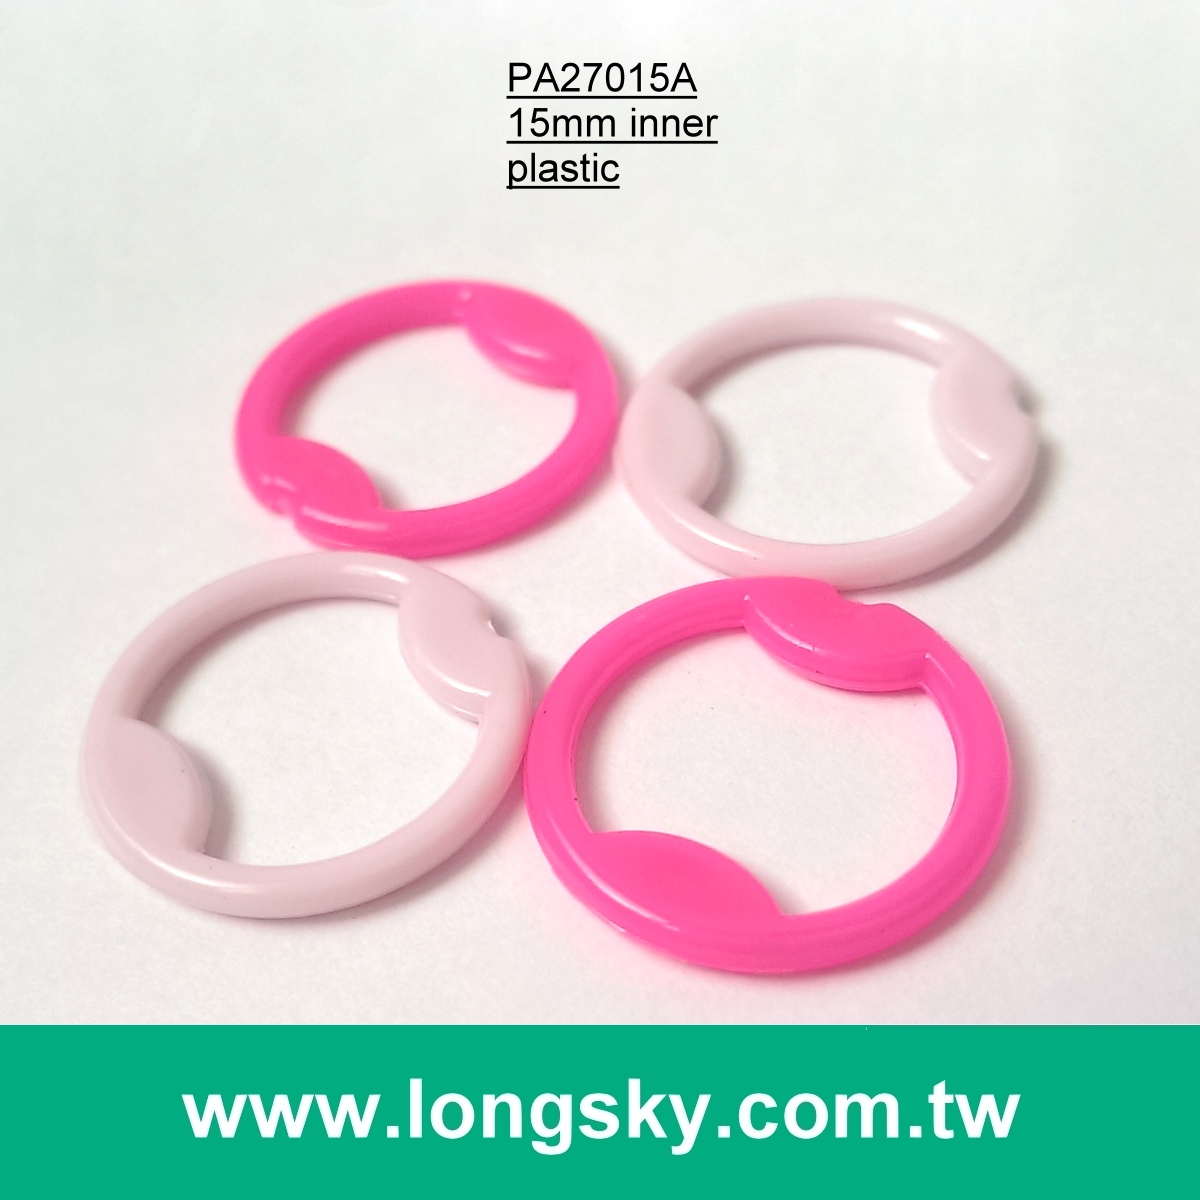 (#PA27015A/15mm inner) POM plastic O-ring buckle for nursing bras